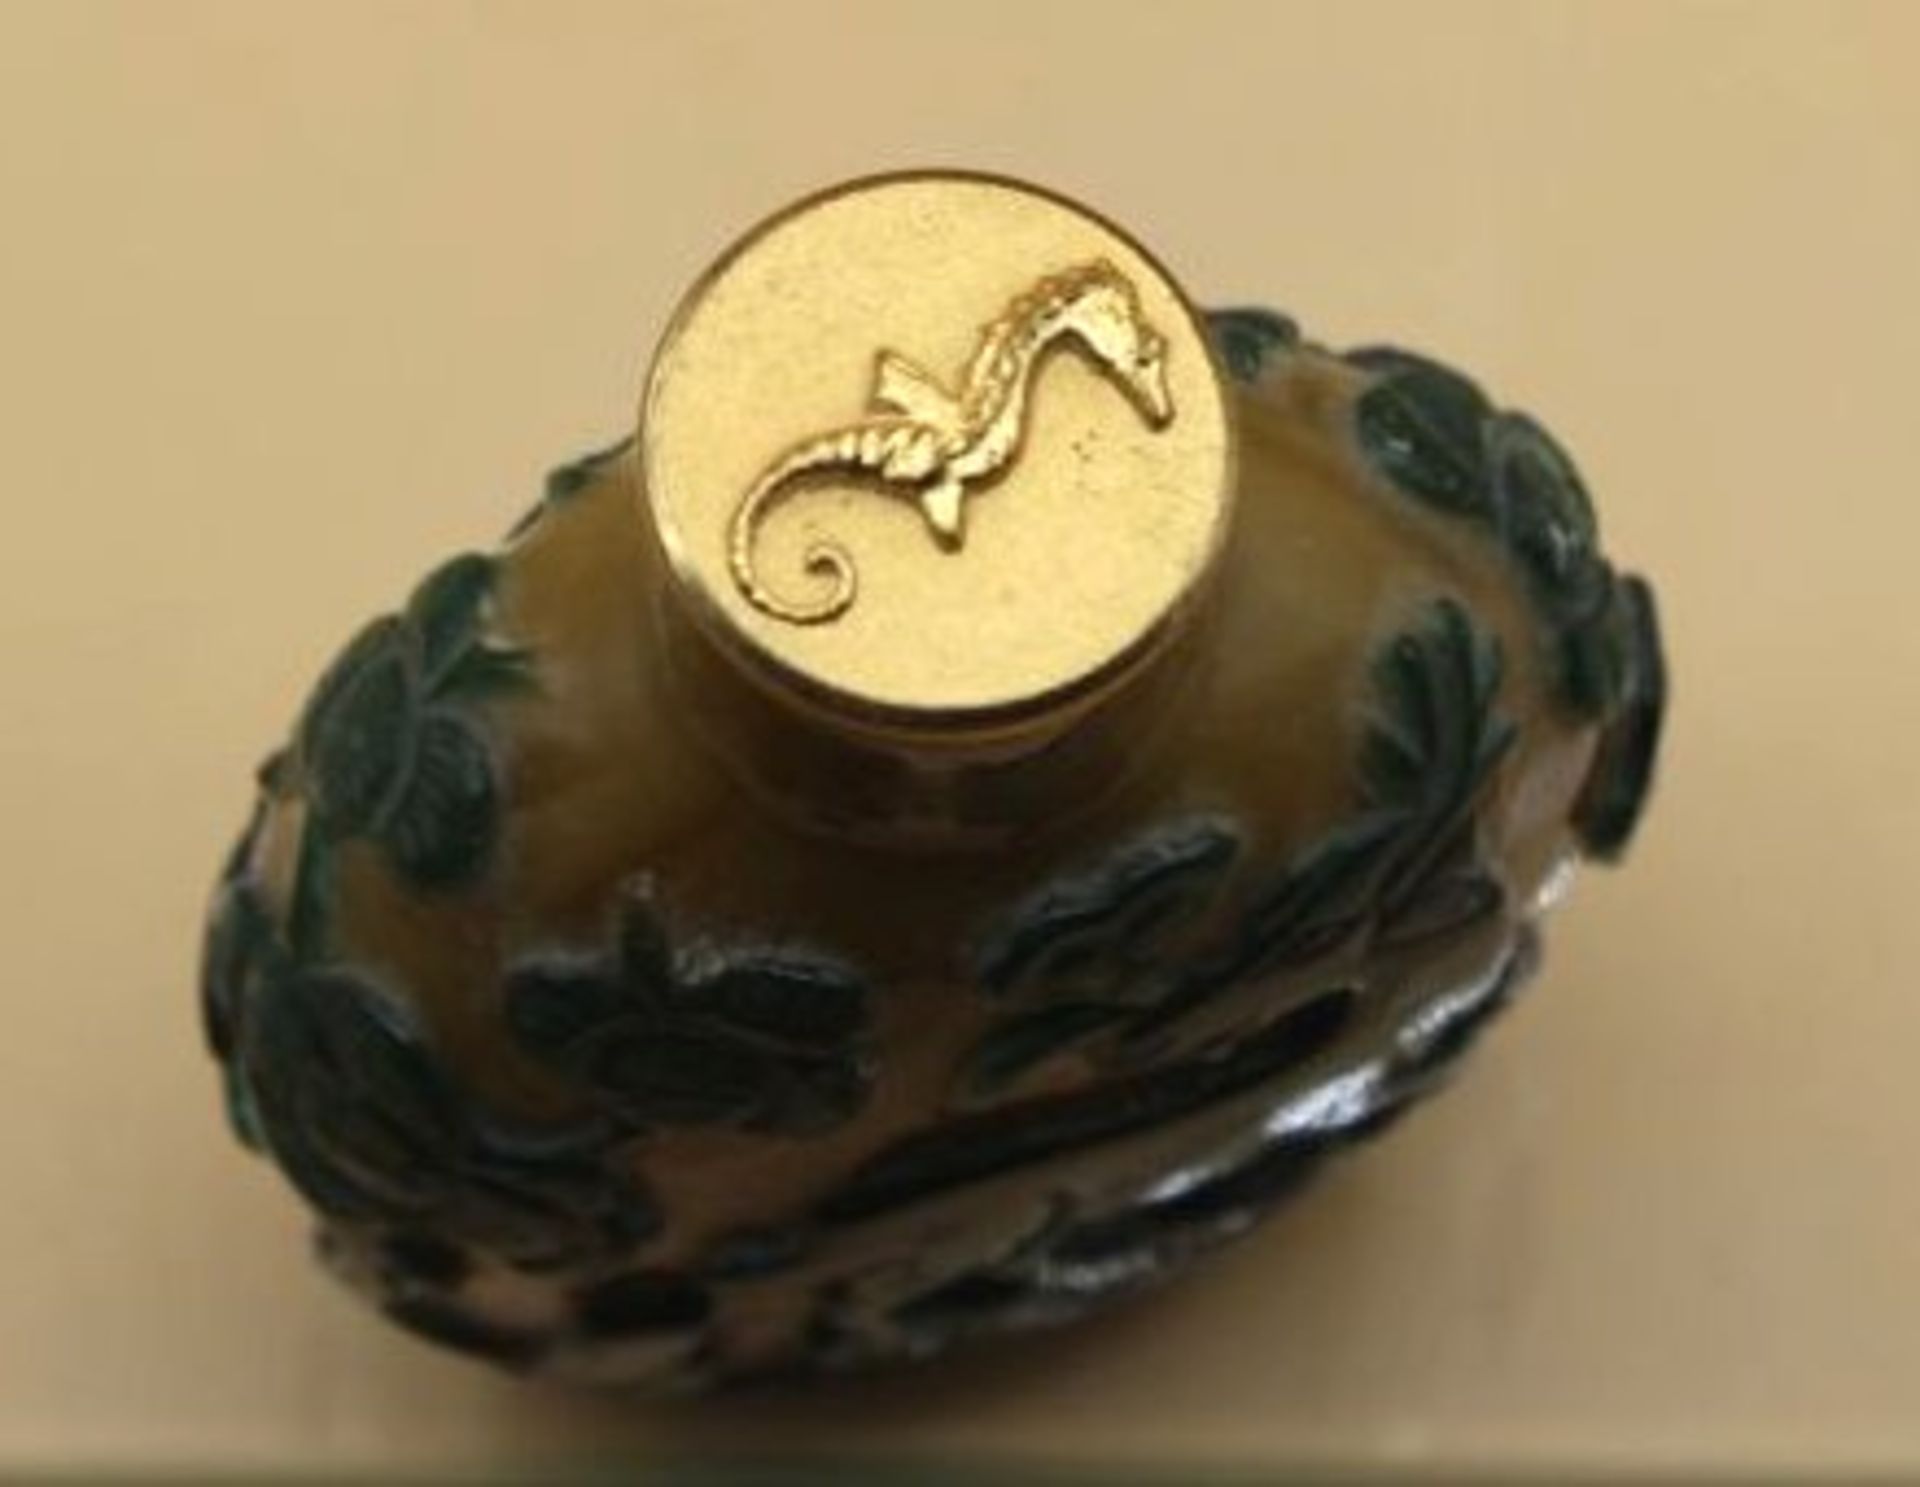 fein gearbeitete Snuff-Bottle, China, wohl 18./19. Jhd., geschnittene Tierdarstellungen, H-6cm. - Bild 4 aus 5